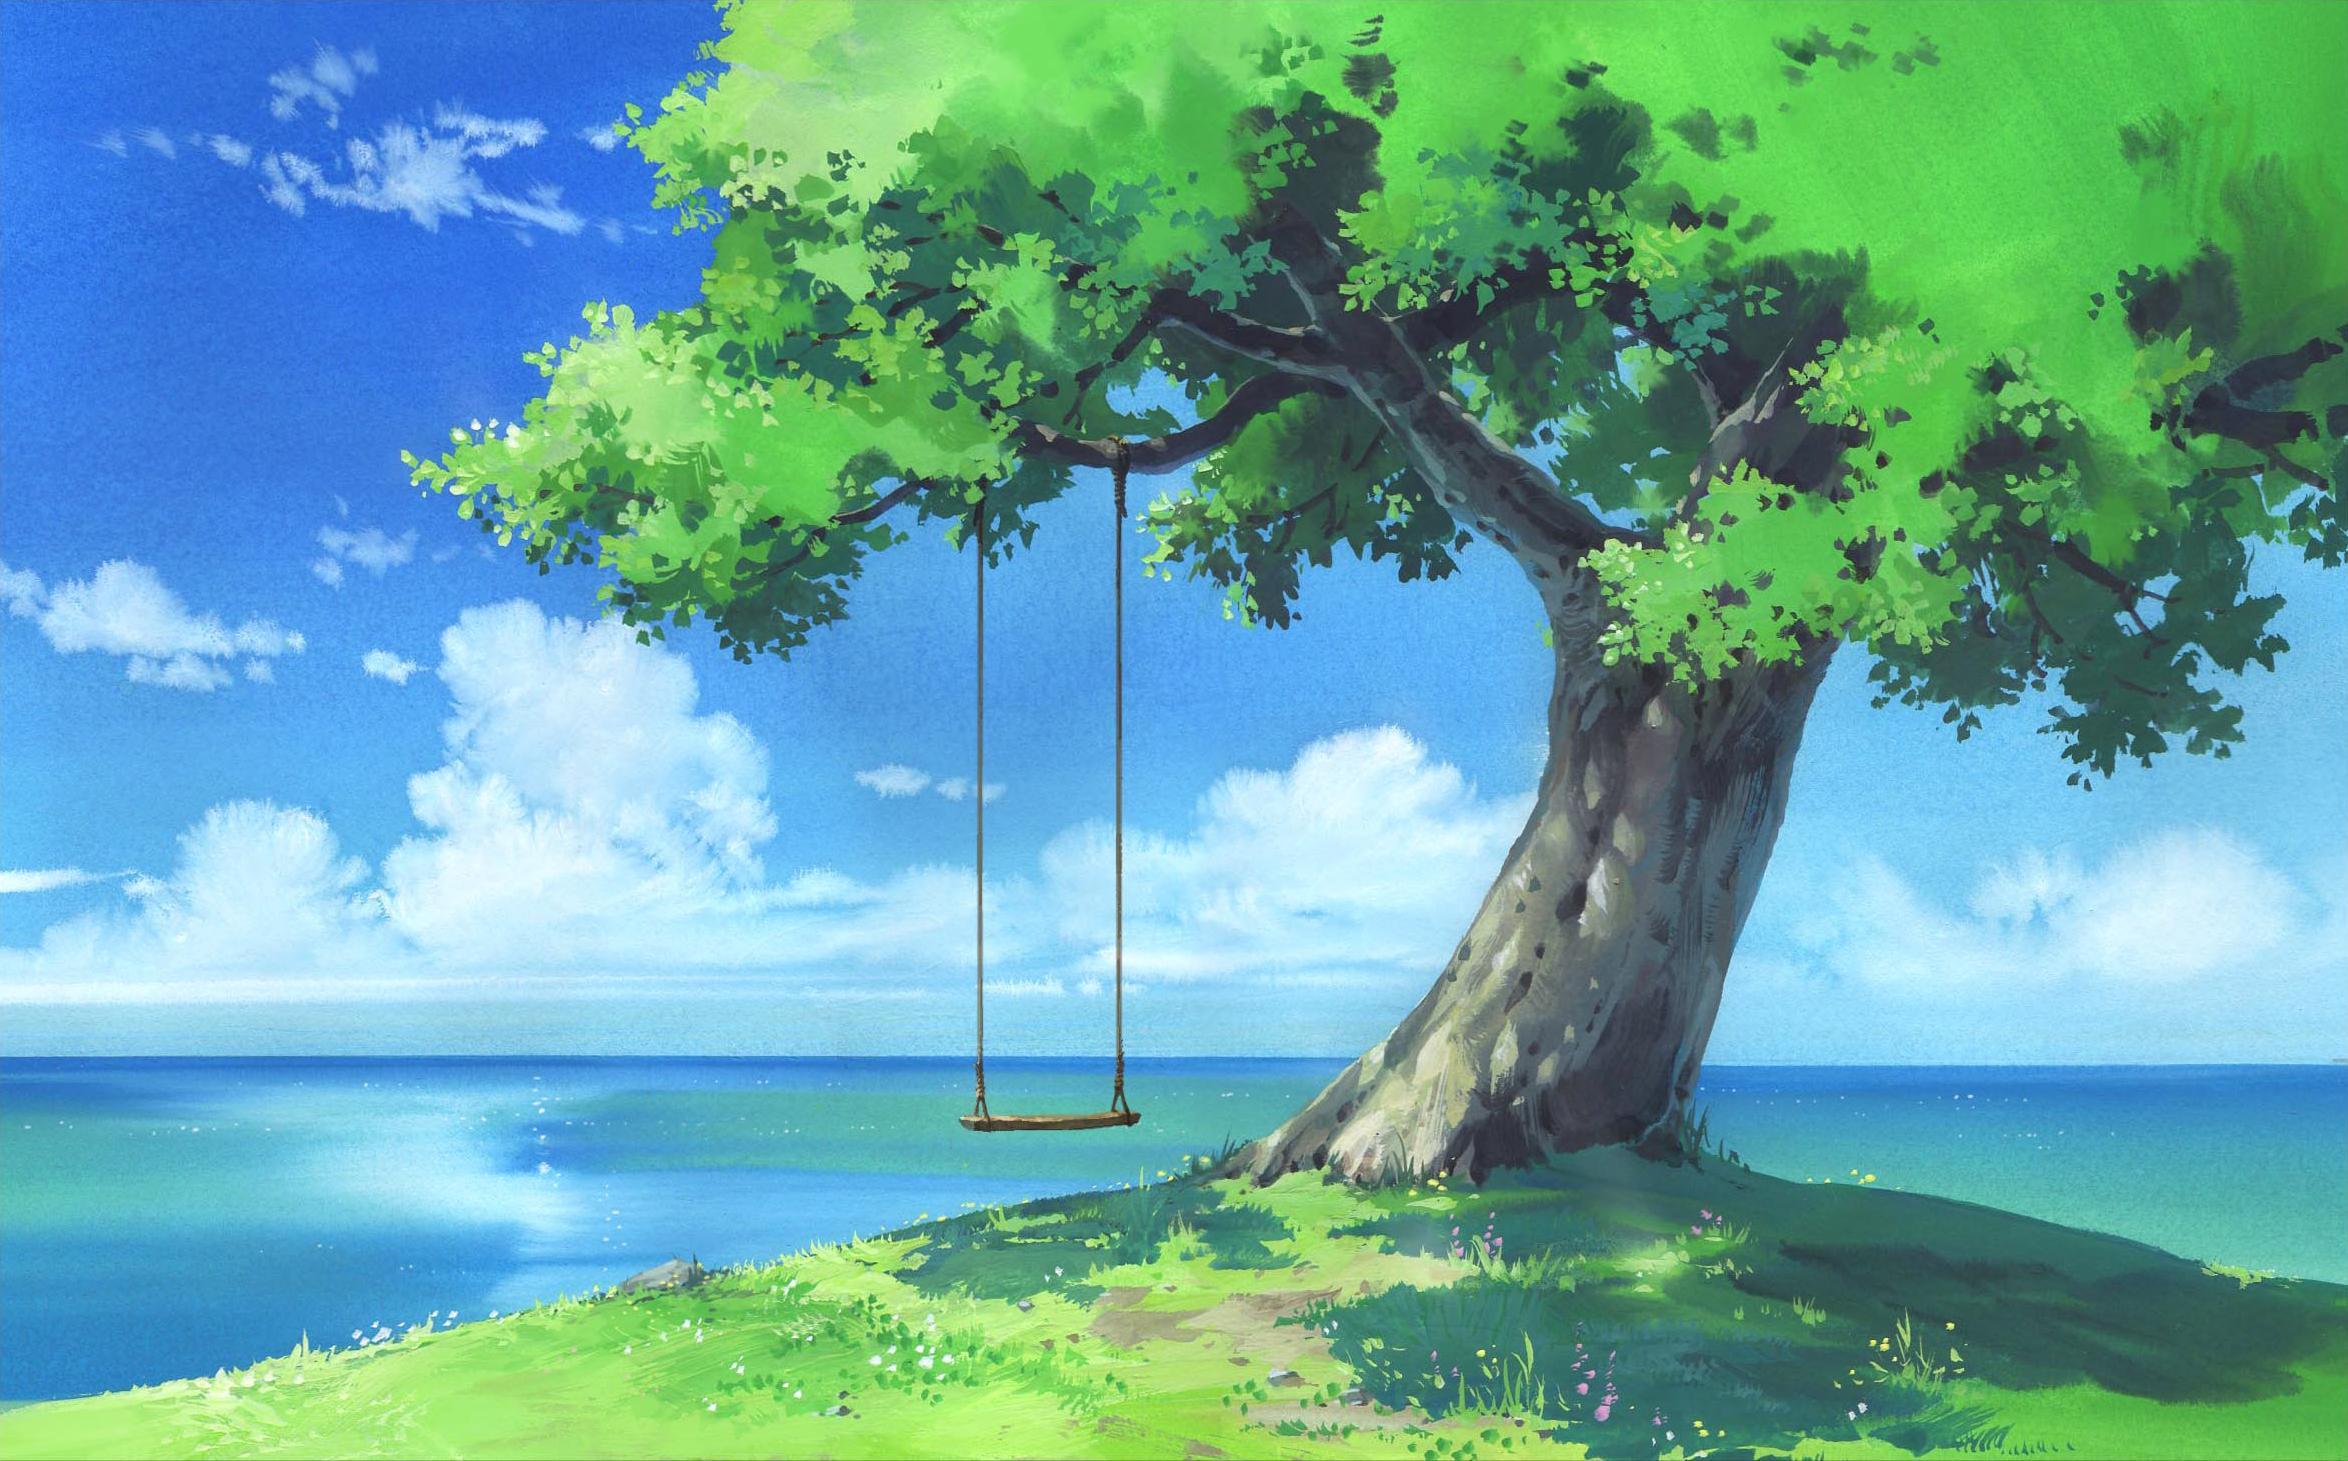 Nik on Twitter | Anime scenery, Scenery wallpaper, Anime scenery wallpaper